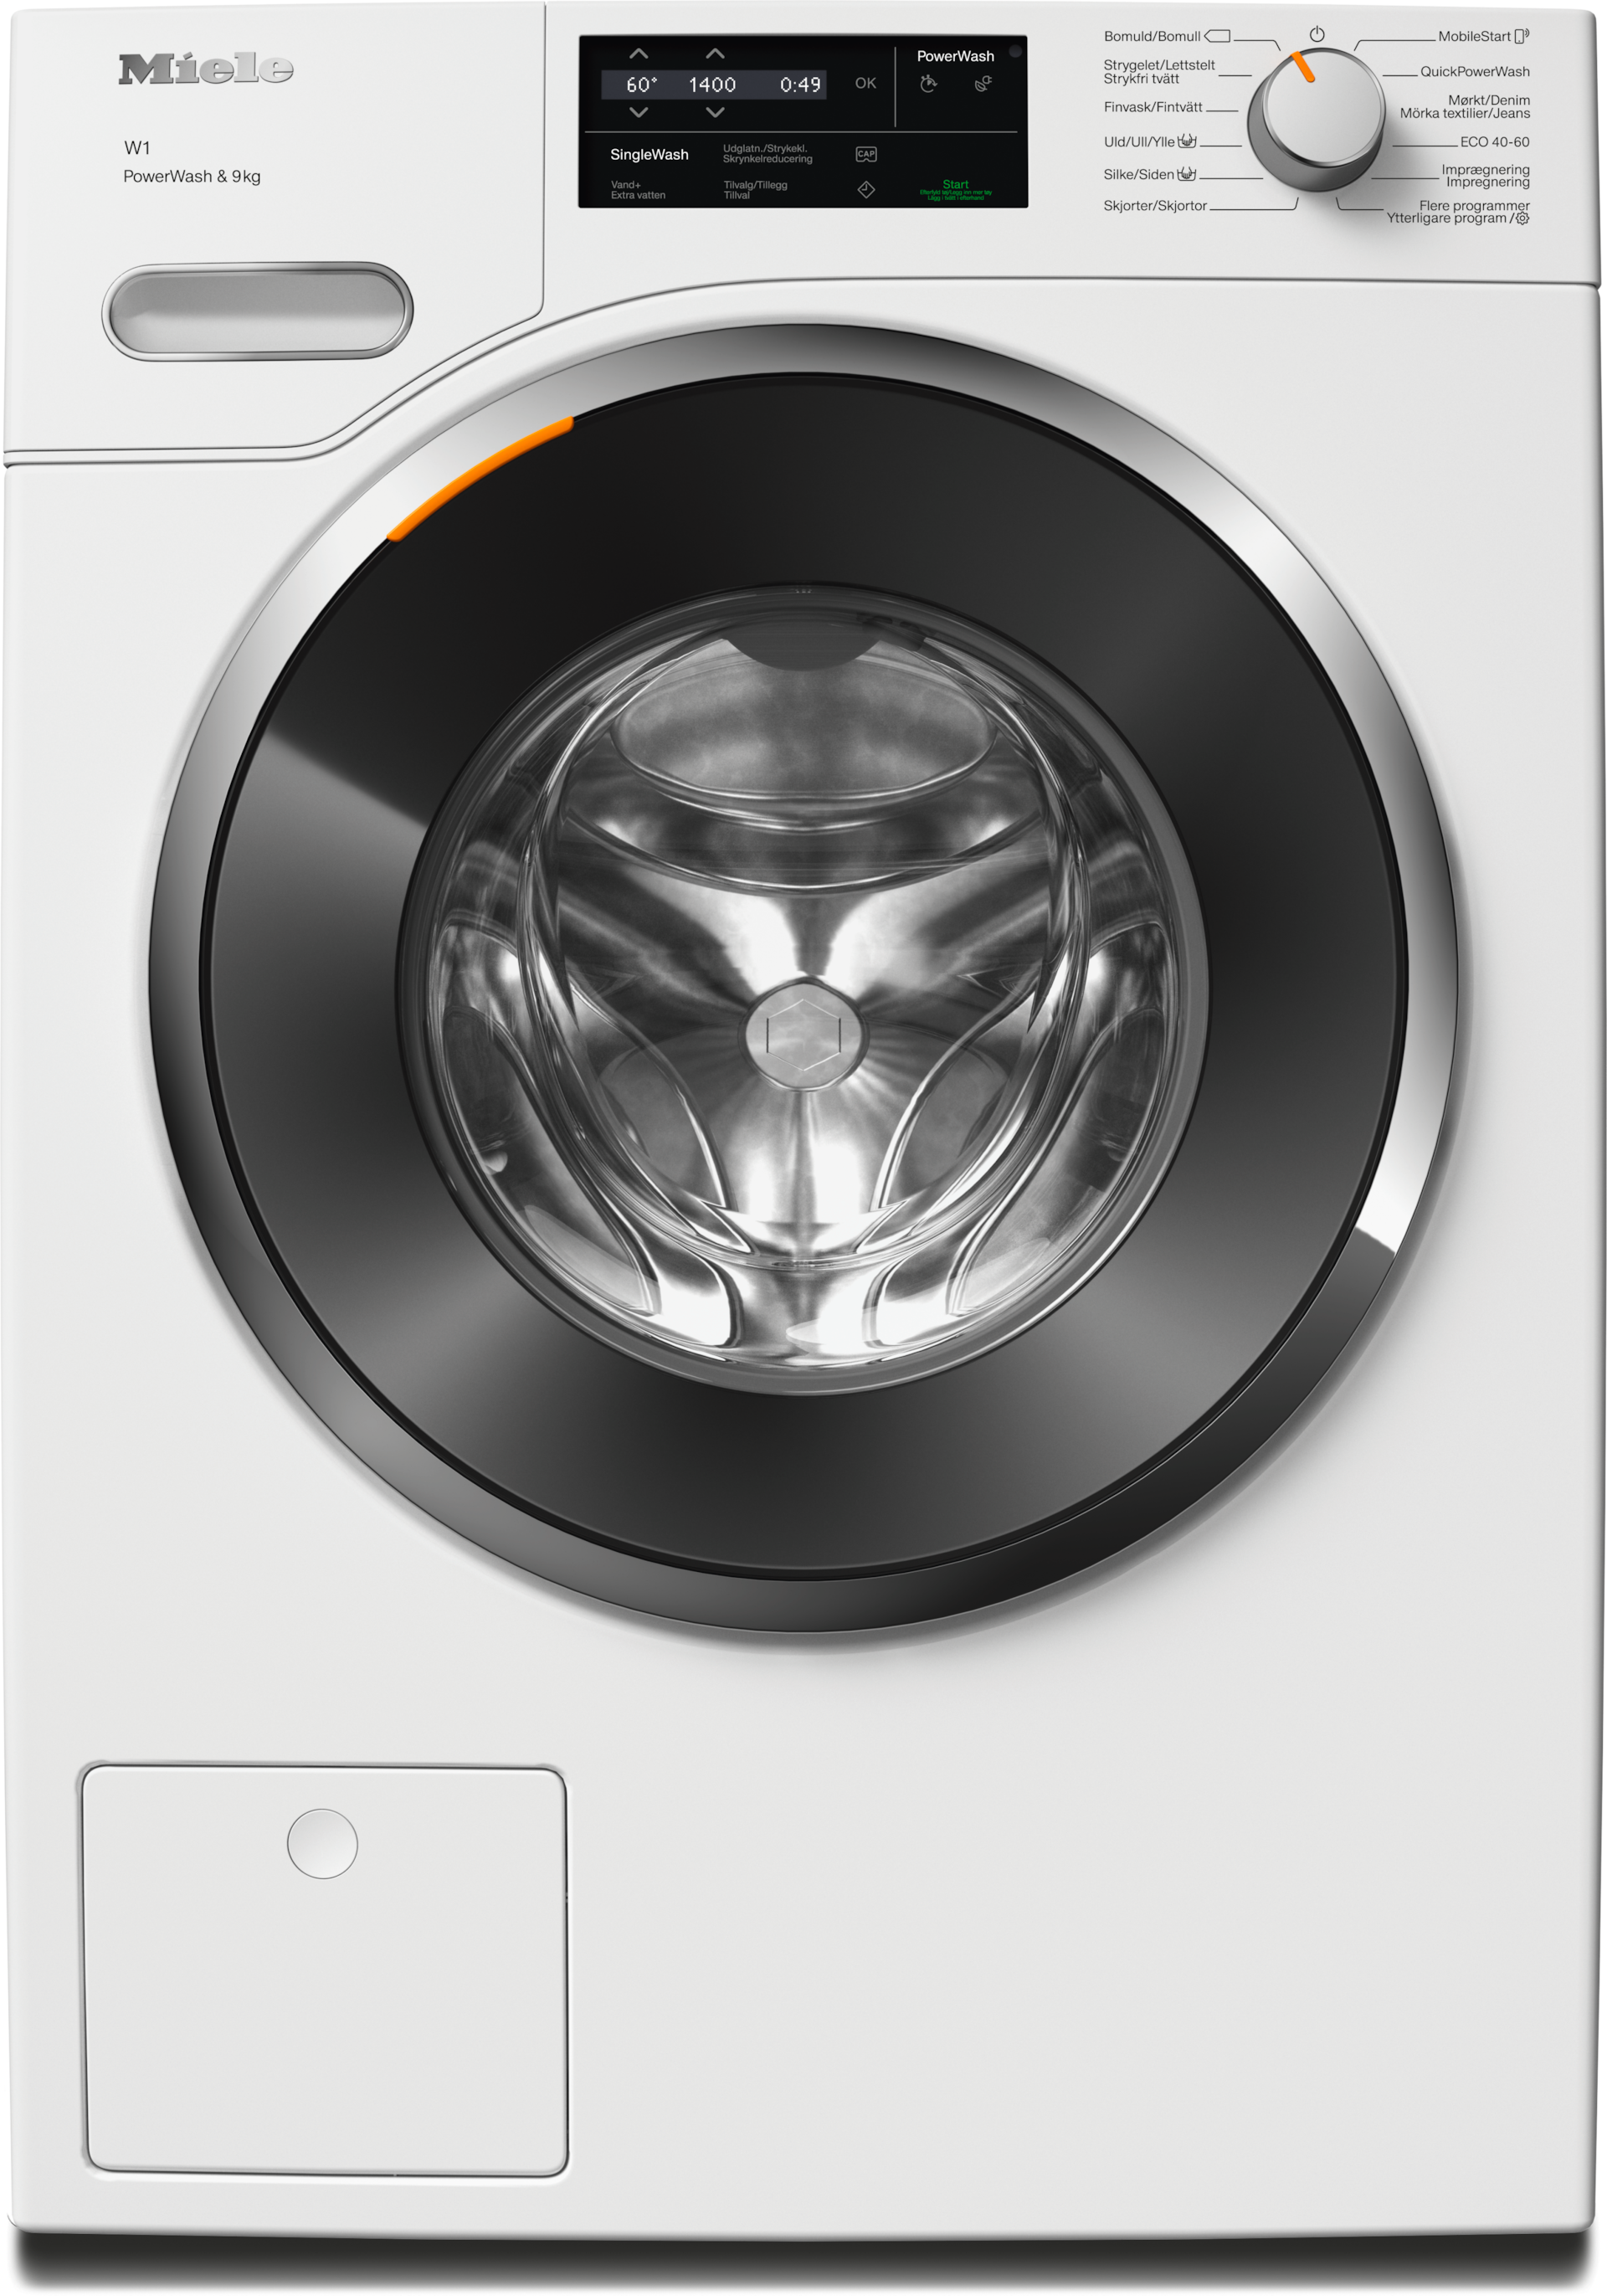 Vaskemaskiner - WWG360 WCS PWash&9kg Lotushvid - 1